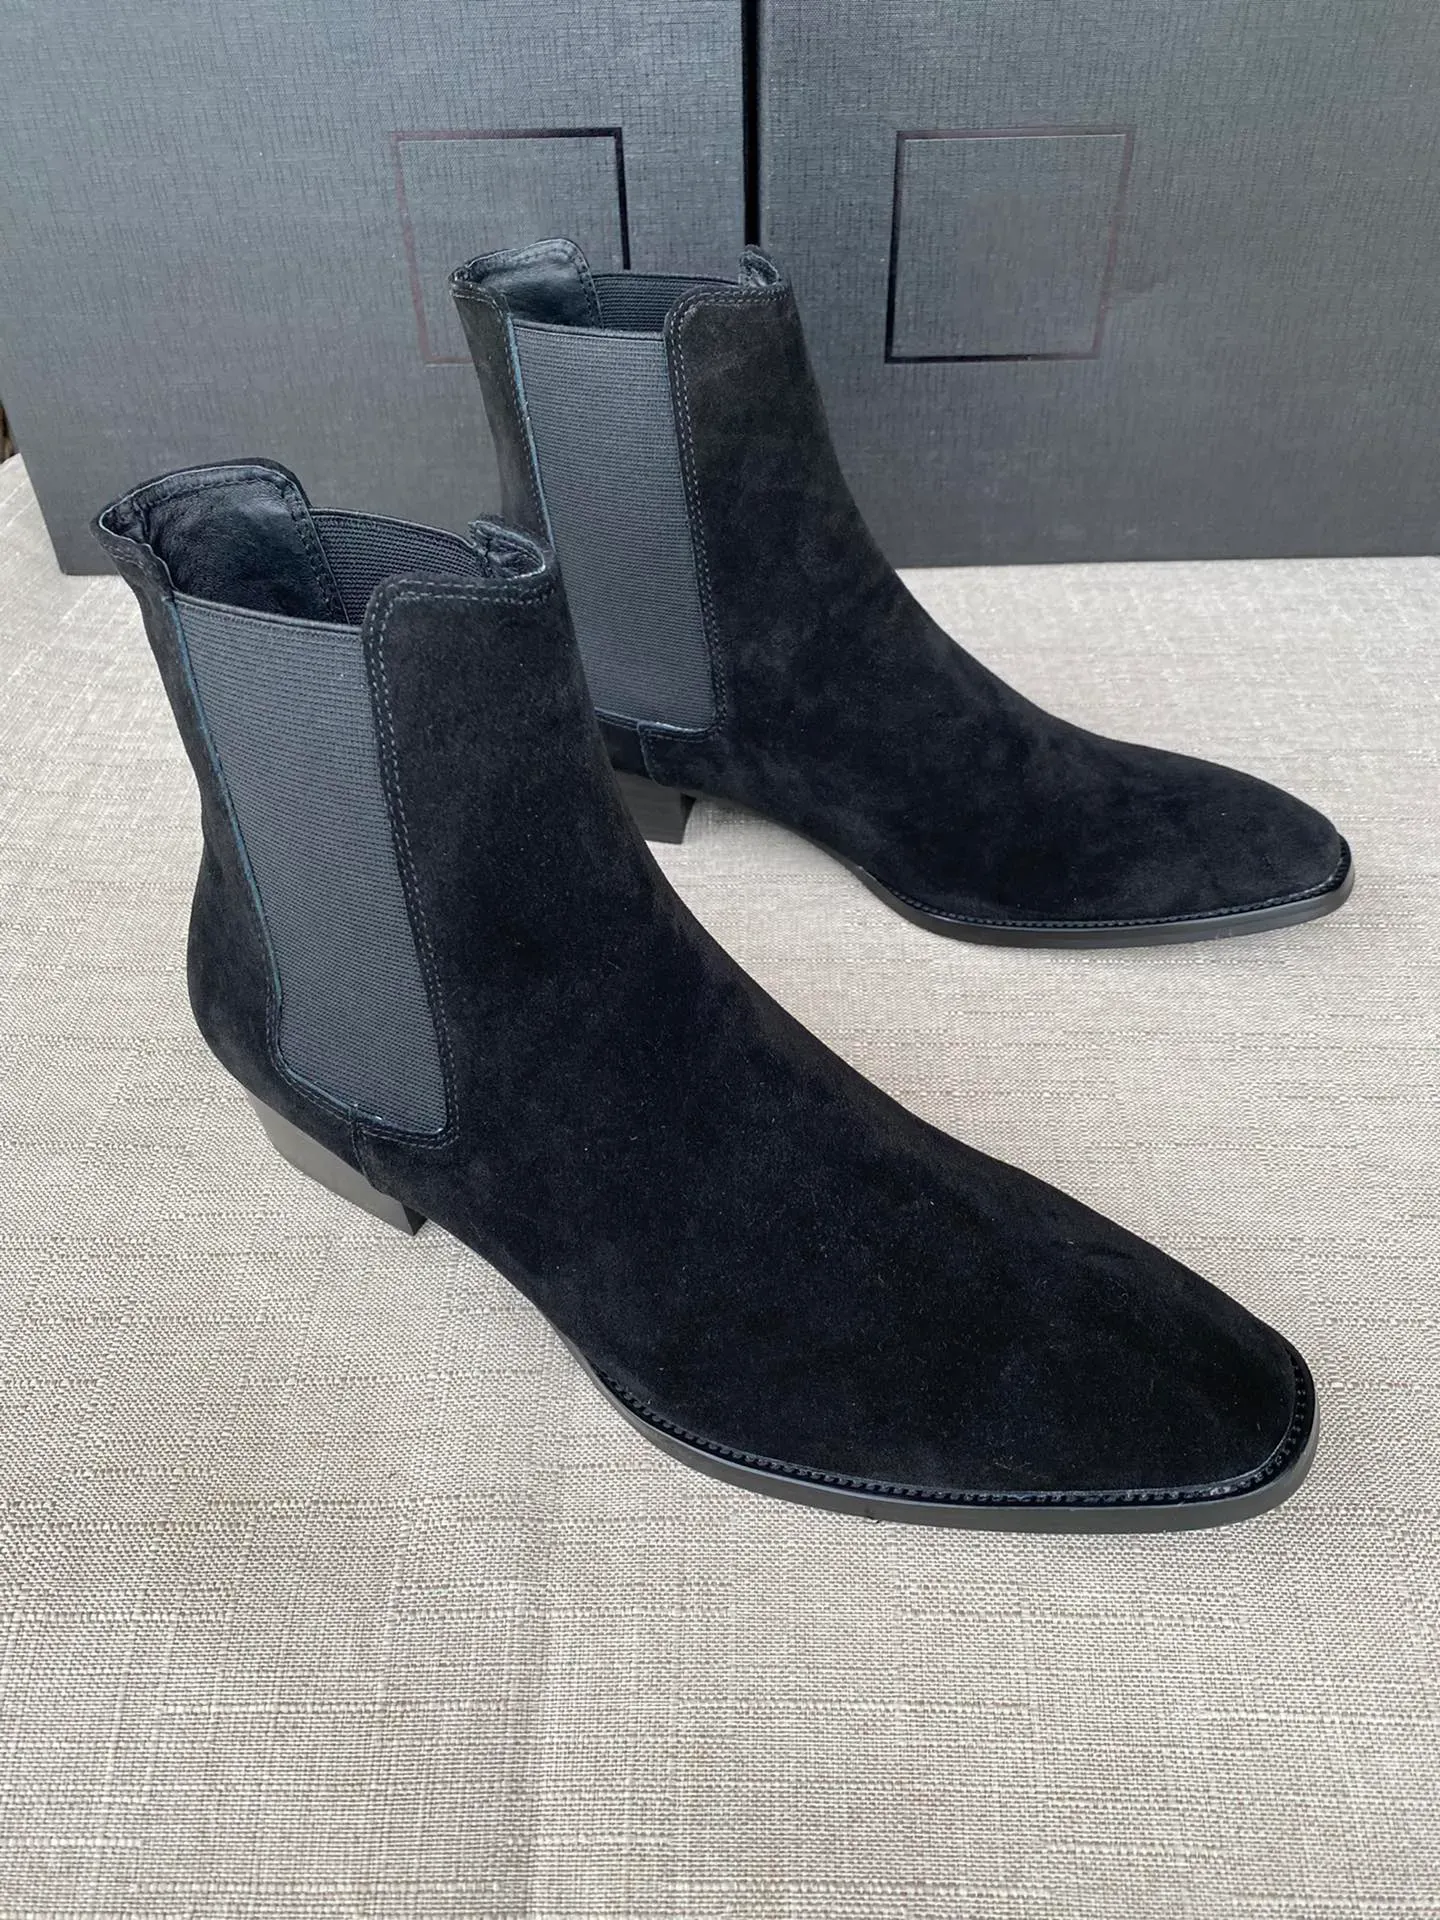 Scarpe Street Style Uomo Slp Wyatt Harness Boots Pelle di vitello Pelle scamosciata Stivali marroni Stivali da cowboy occidentali Alta qualità